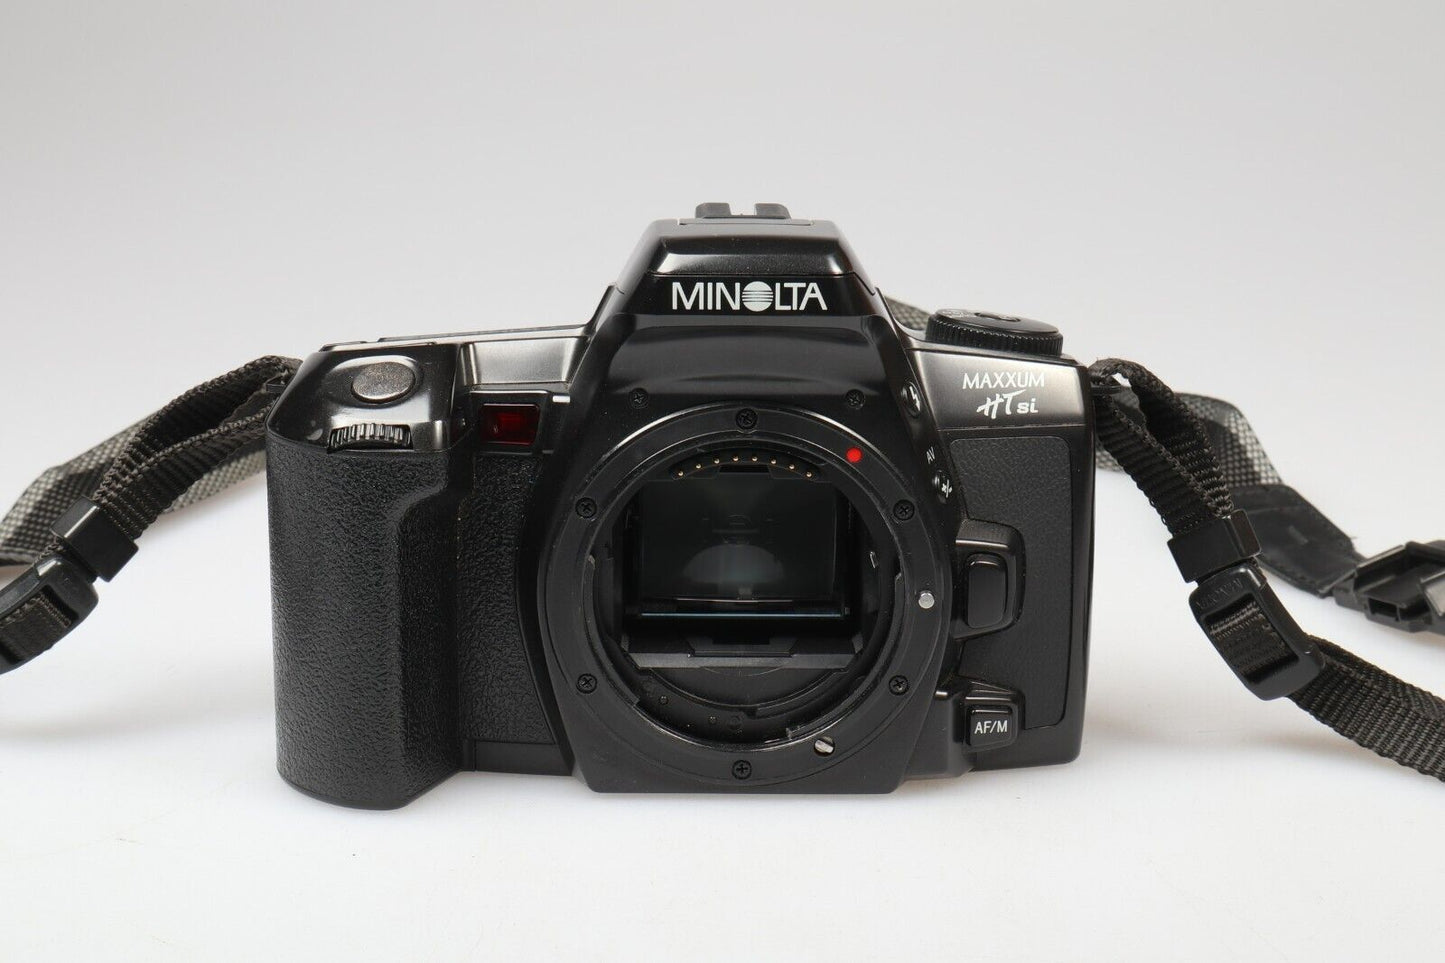 Minolta Maxxum HTsi | 35mm SLR Film Camera | Body Only